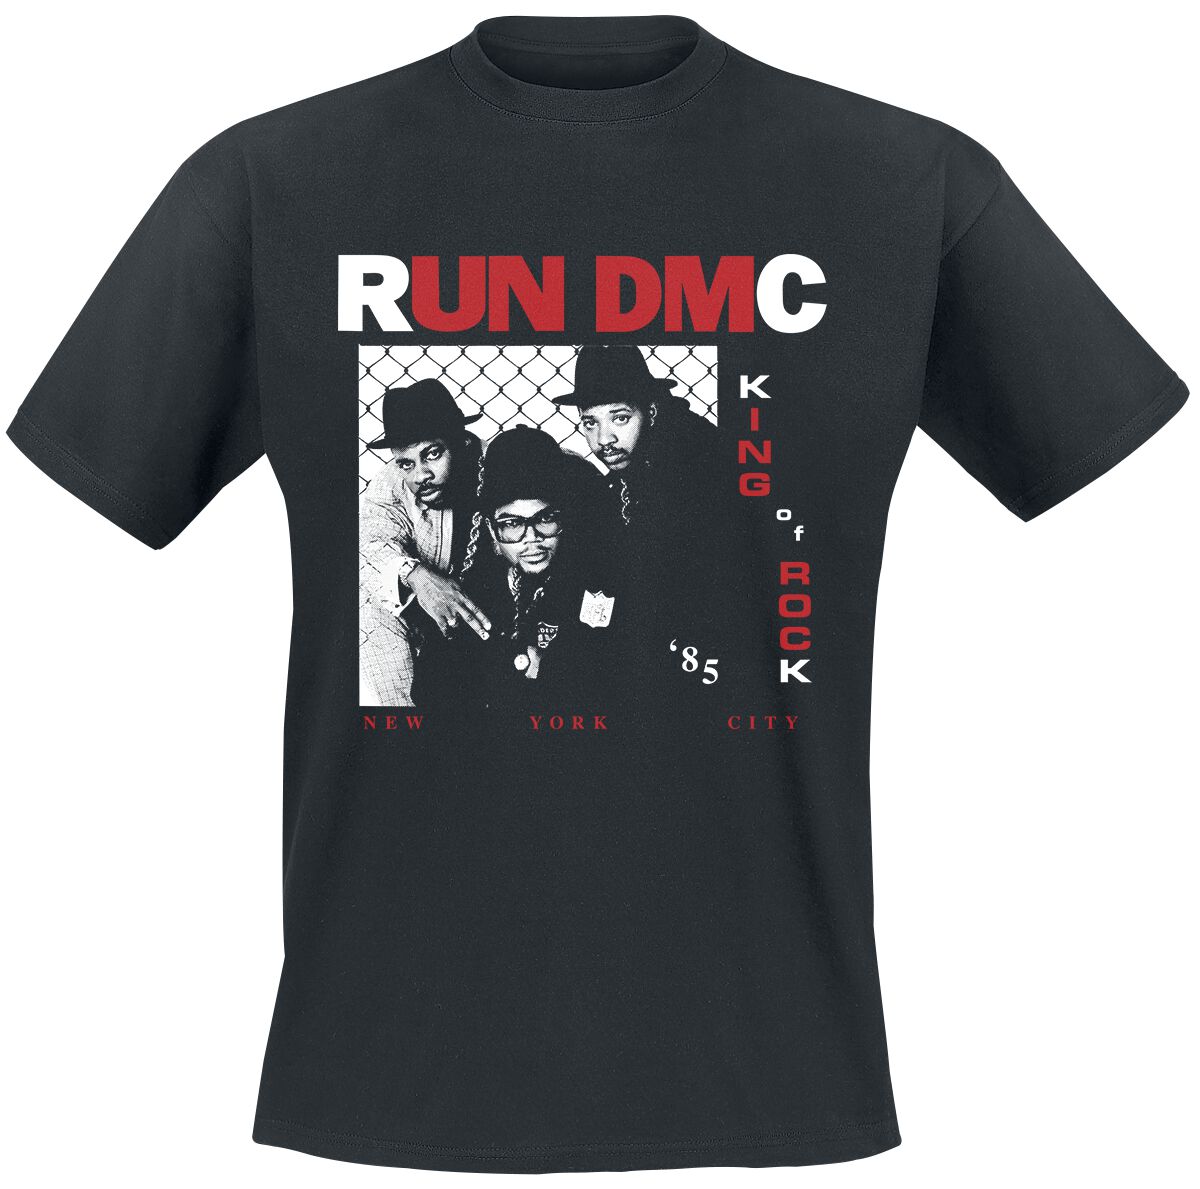 Run DMC T-Shirt - King Of Rock Photo - S bis XL - für Männer - Größe L - schwarz  - Lizenziertes Merchandise!